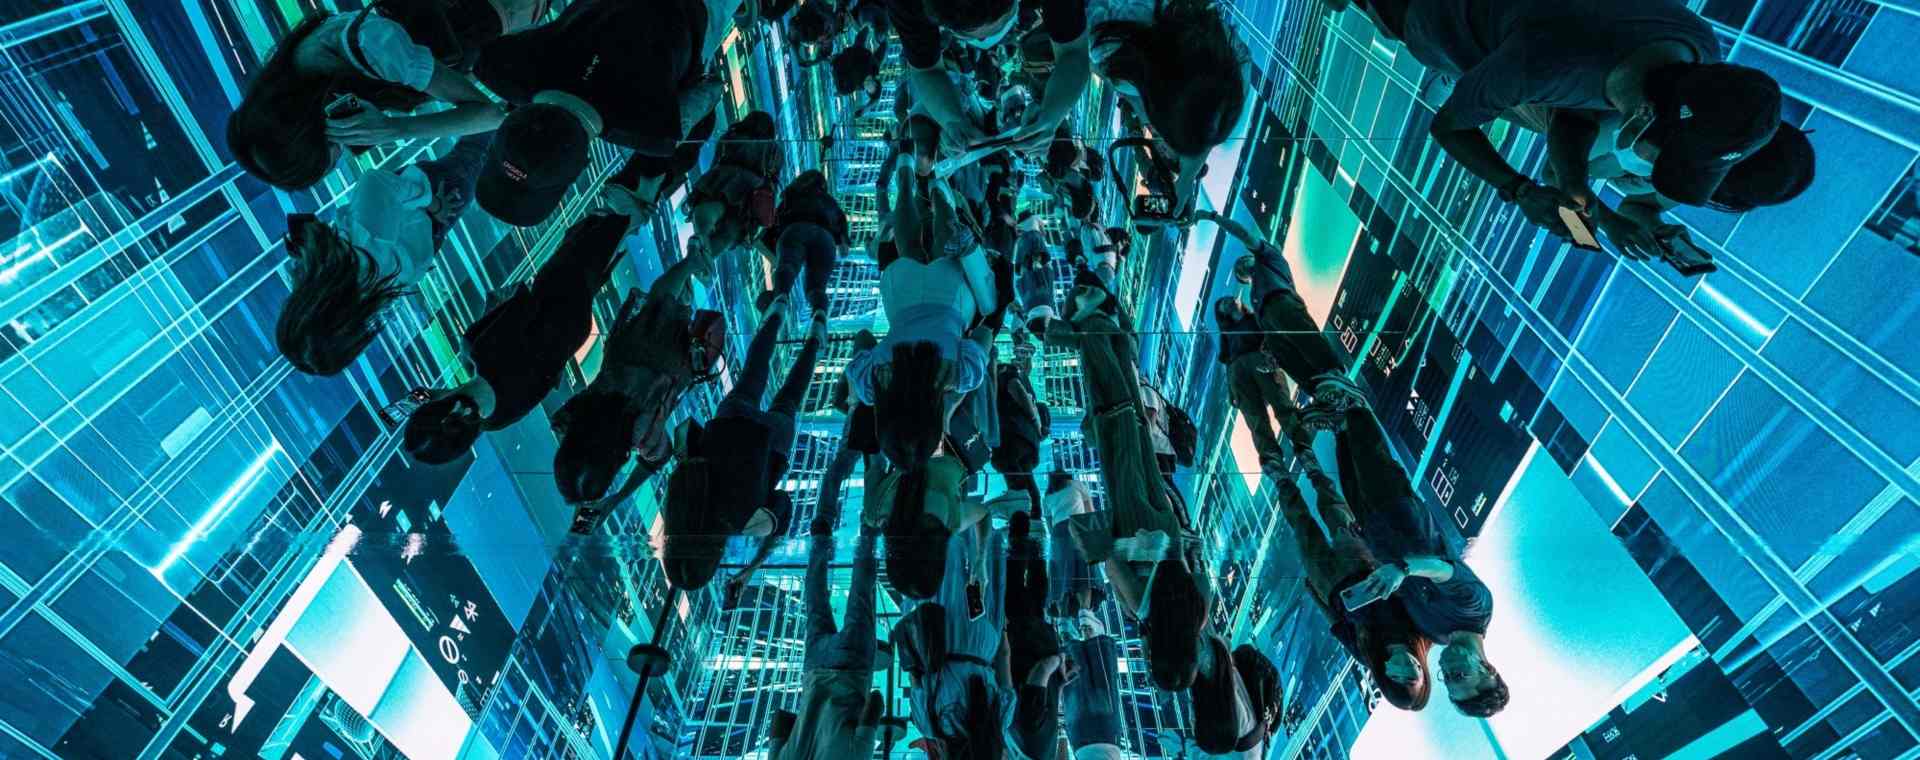 Refleksi pengunjung yang melihat instalasi seni imersif berjudul Machine Hallucinations – Space: Metaverse oleh Refik Anadol di Digital Art Fair Asia yang menampilkan seni digital dan NFT di Hong Kong./Bloomberg-Lam Yik